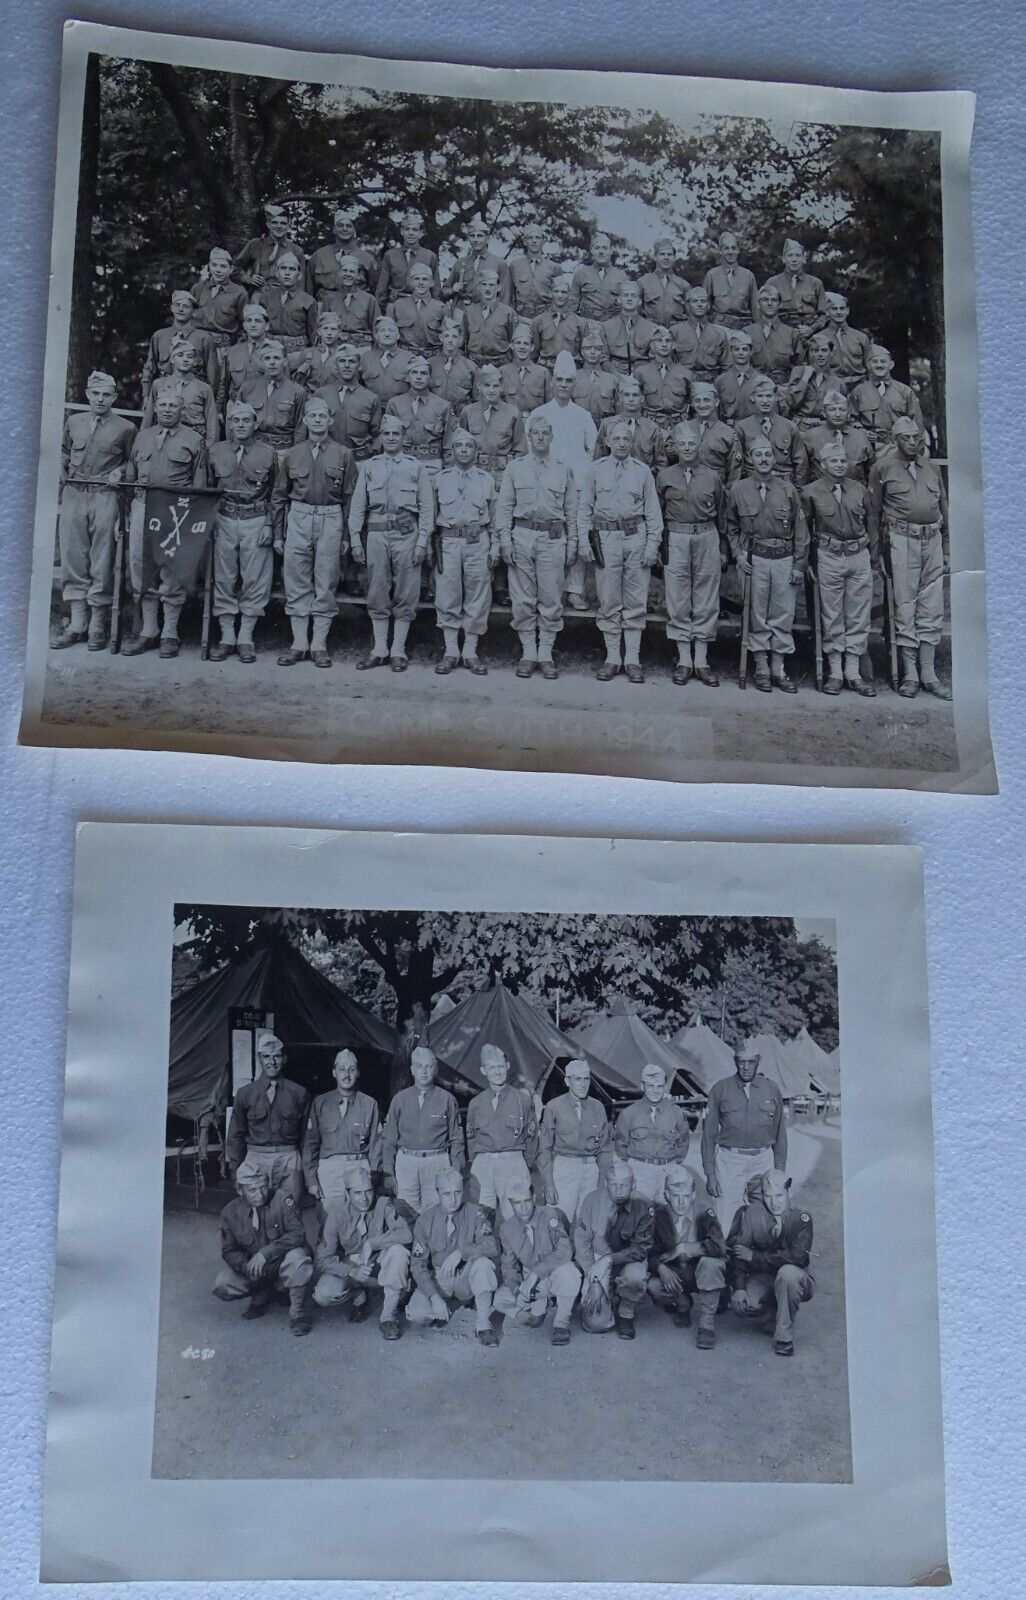 Camp Smith 1944 Army Photographs